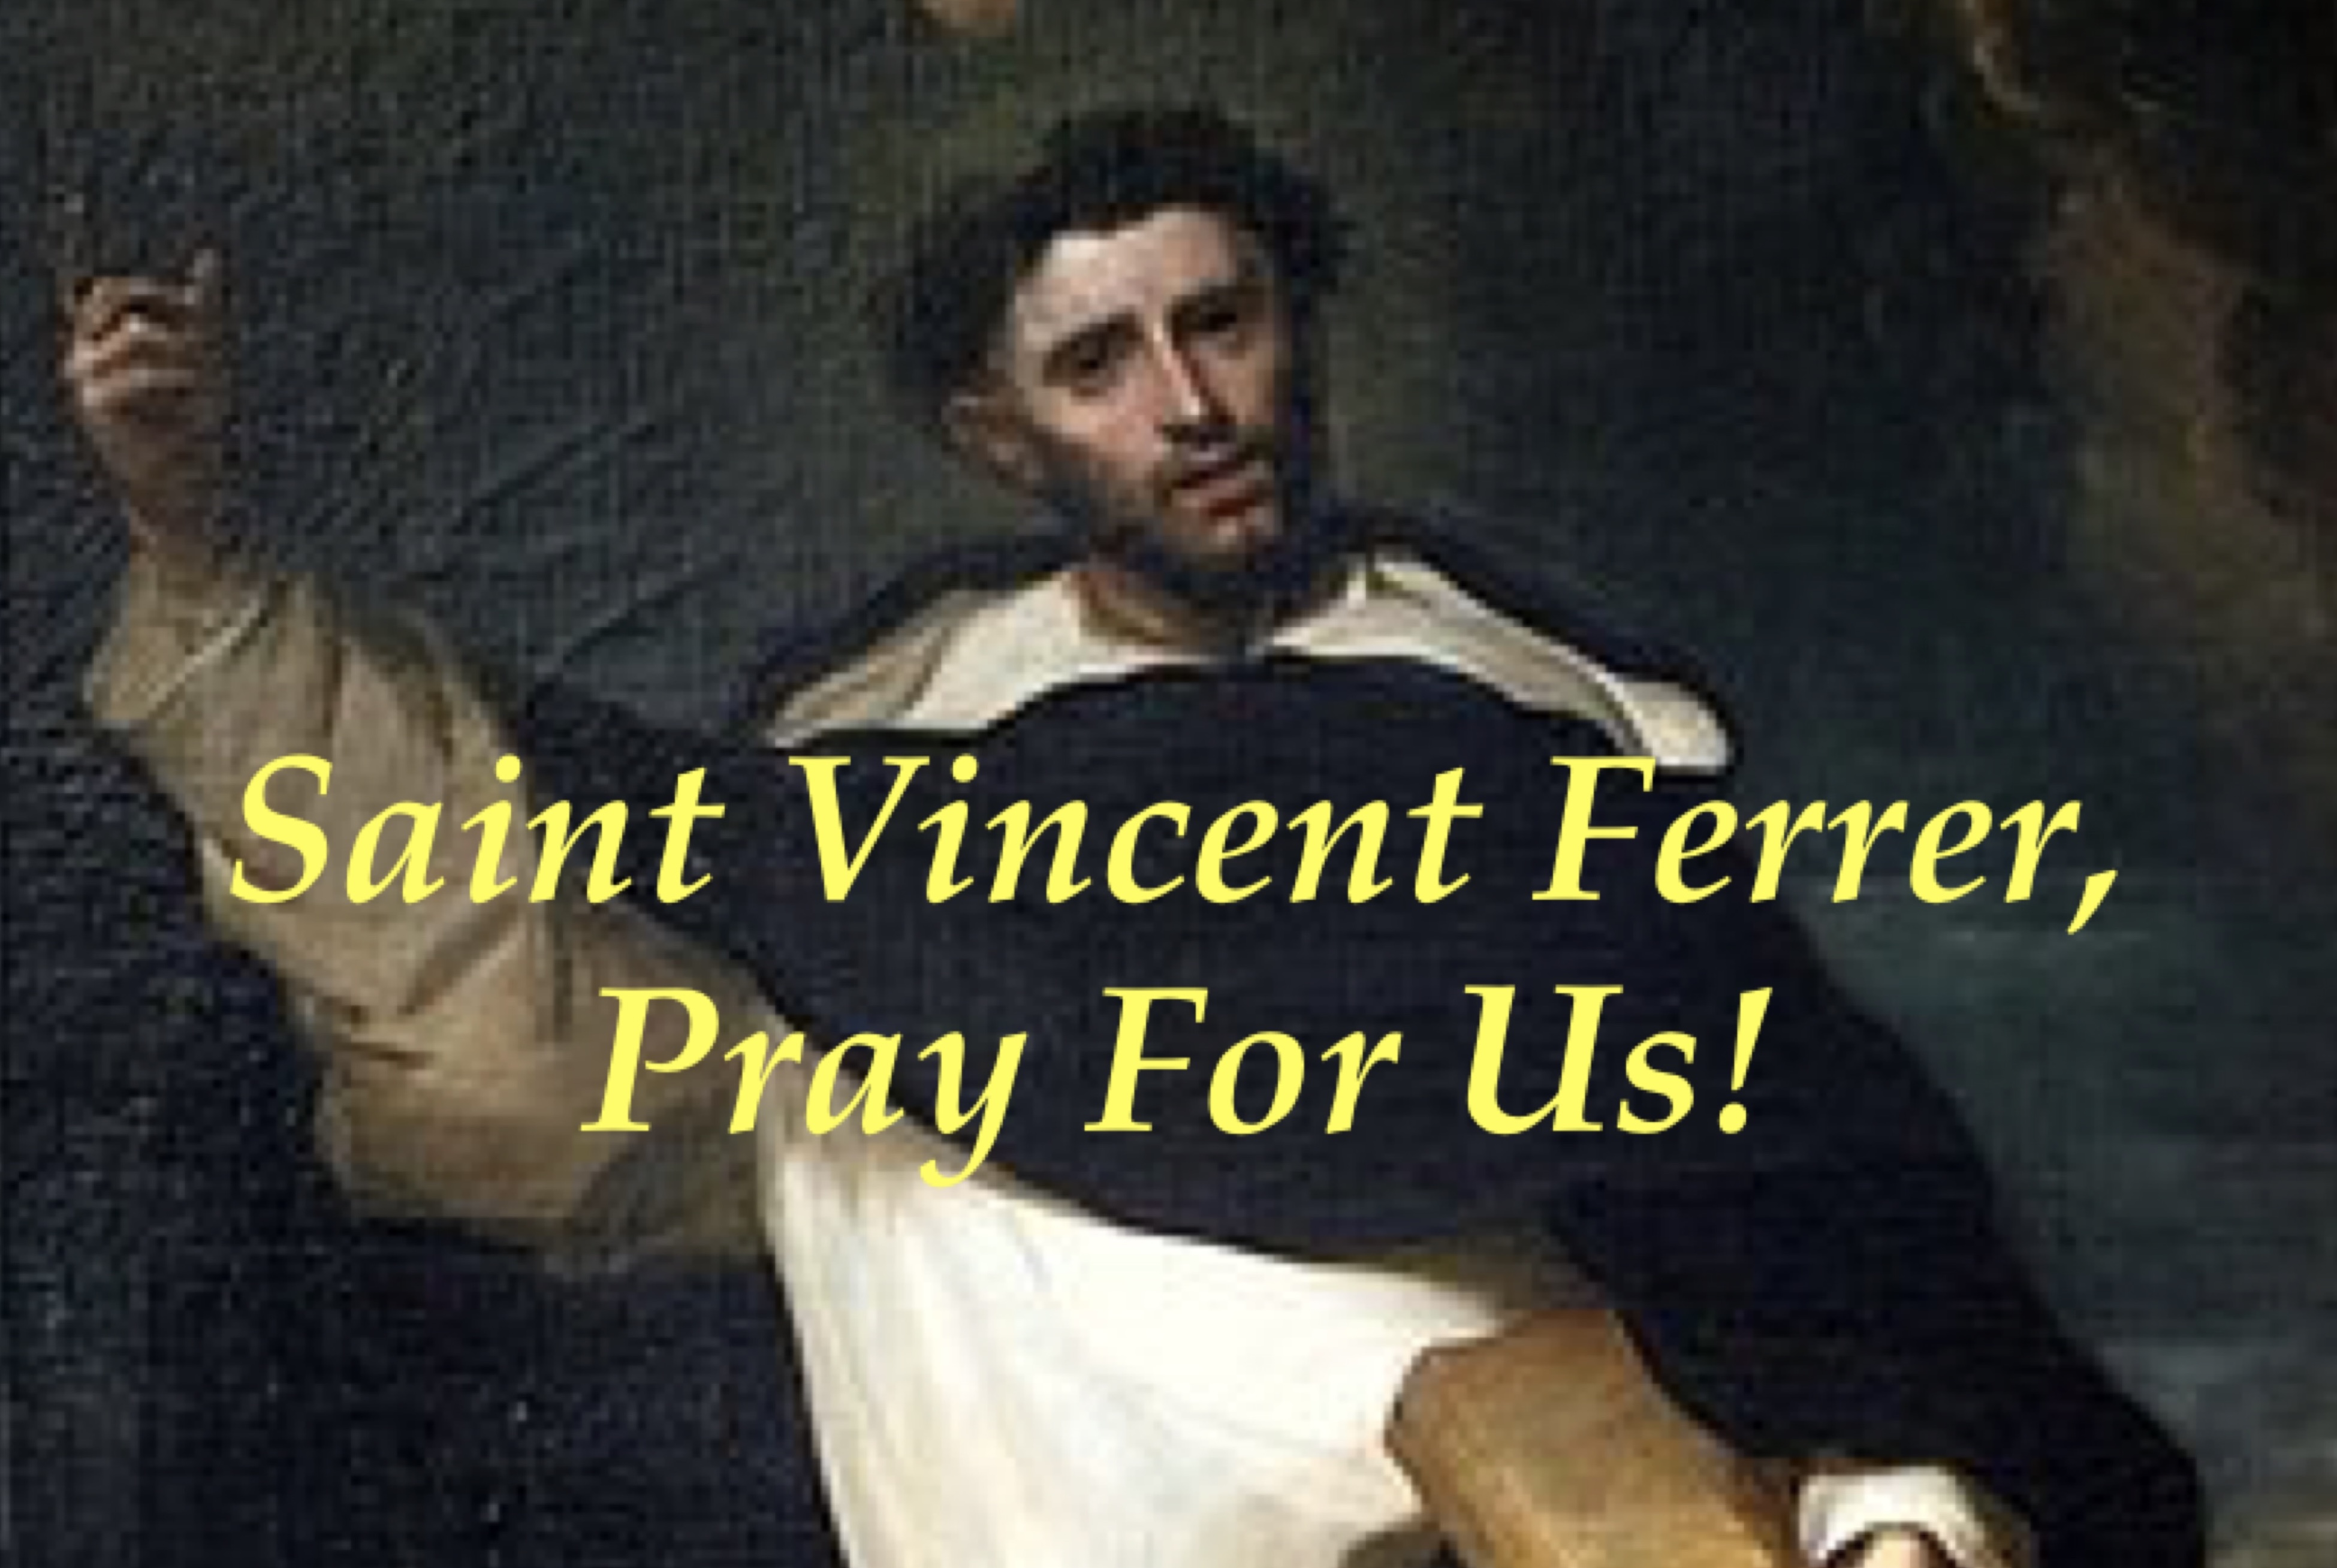 5th April - Saint Vincent Ferrer